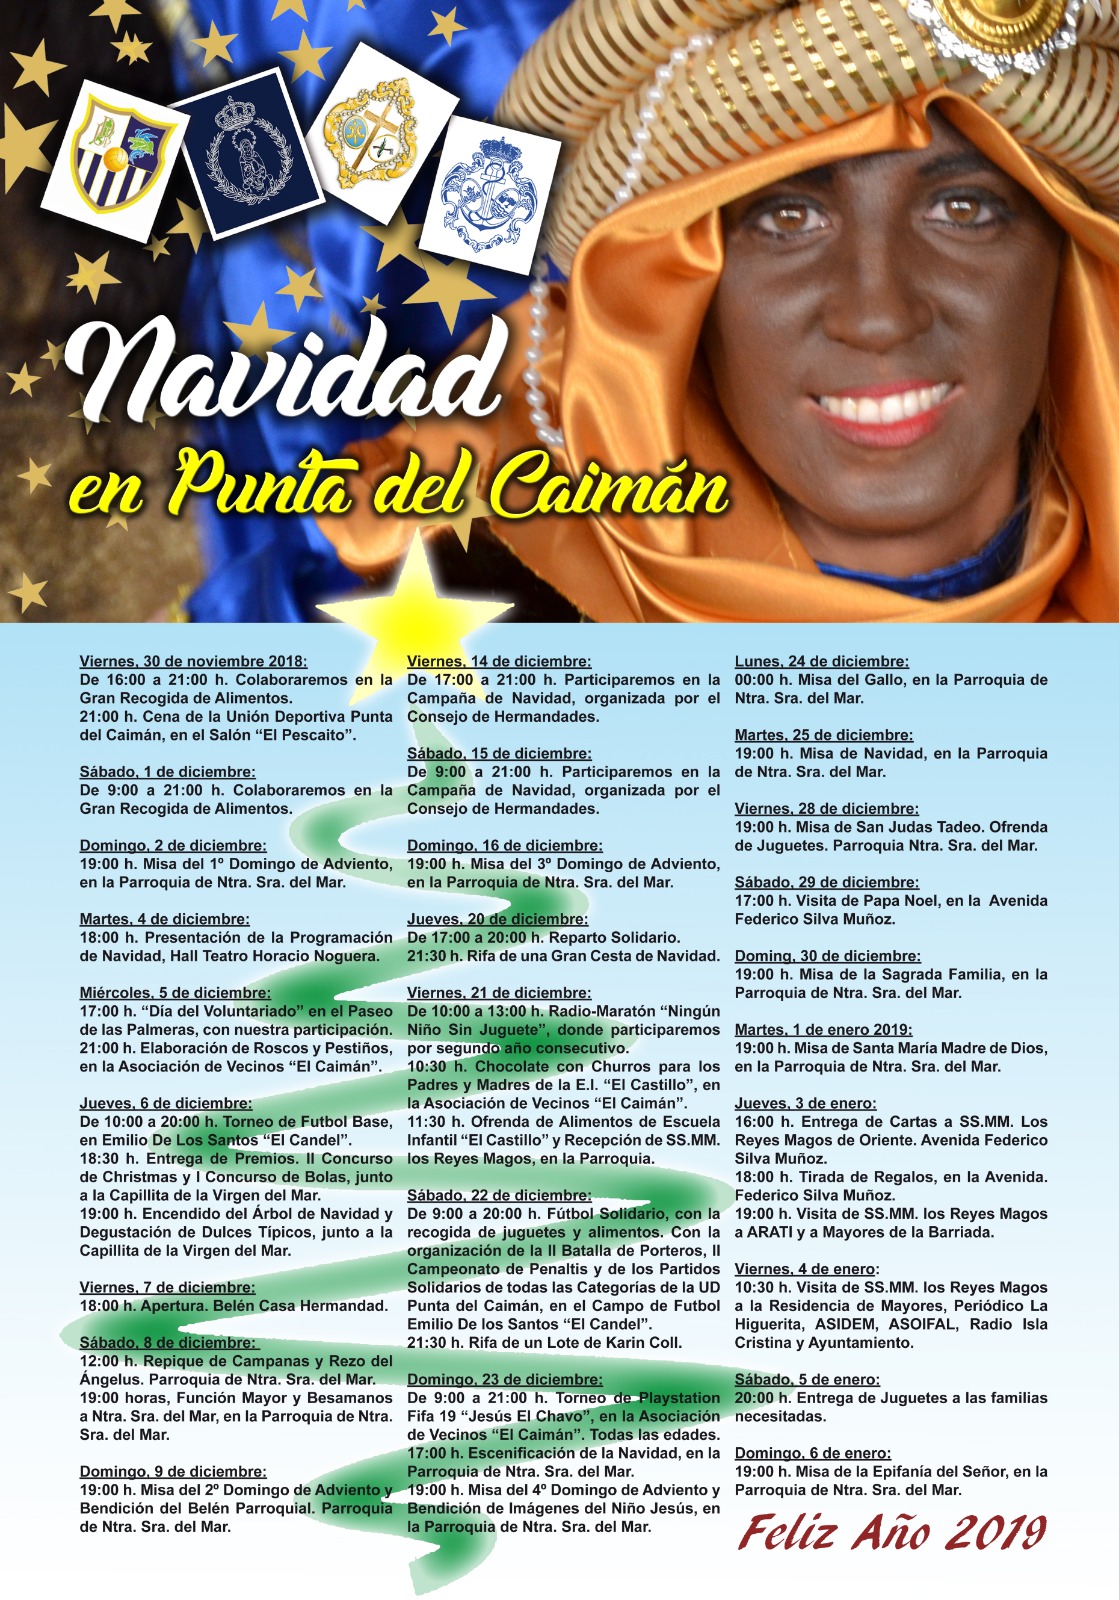 Programación Navidad 2018 en Punta del Caimán, Isla Cristina